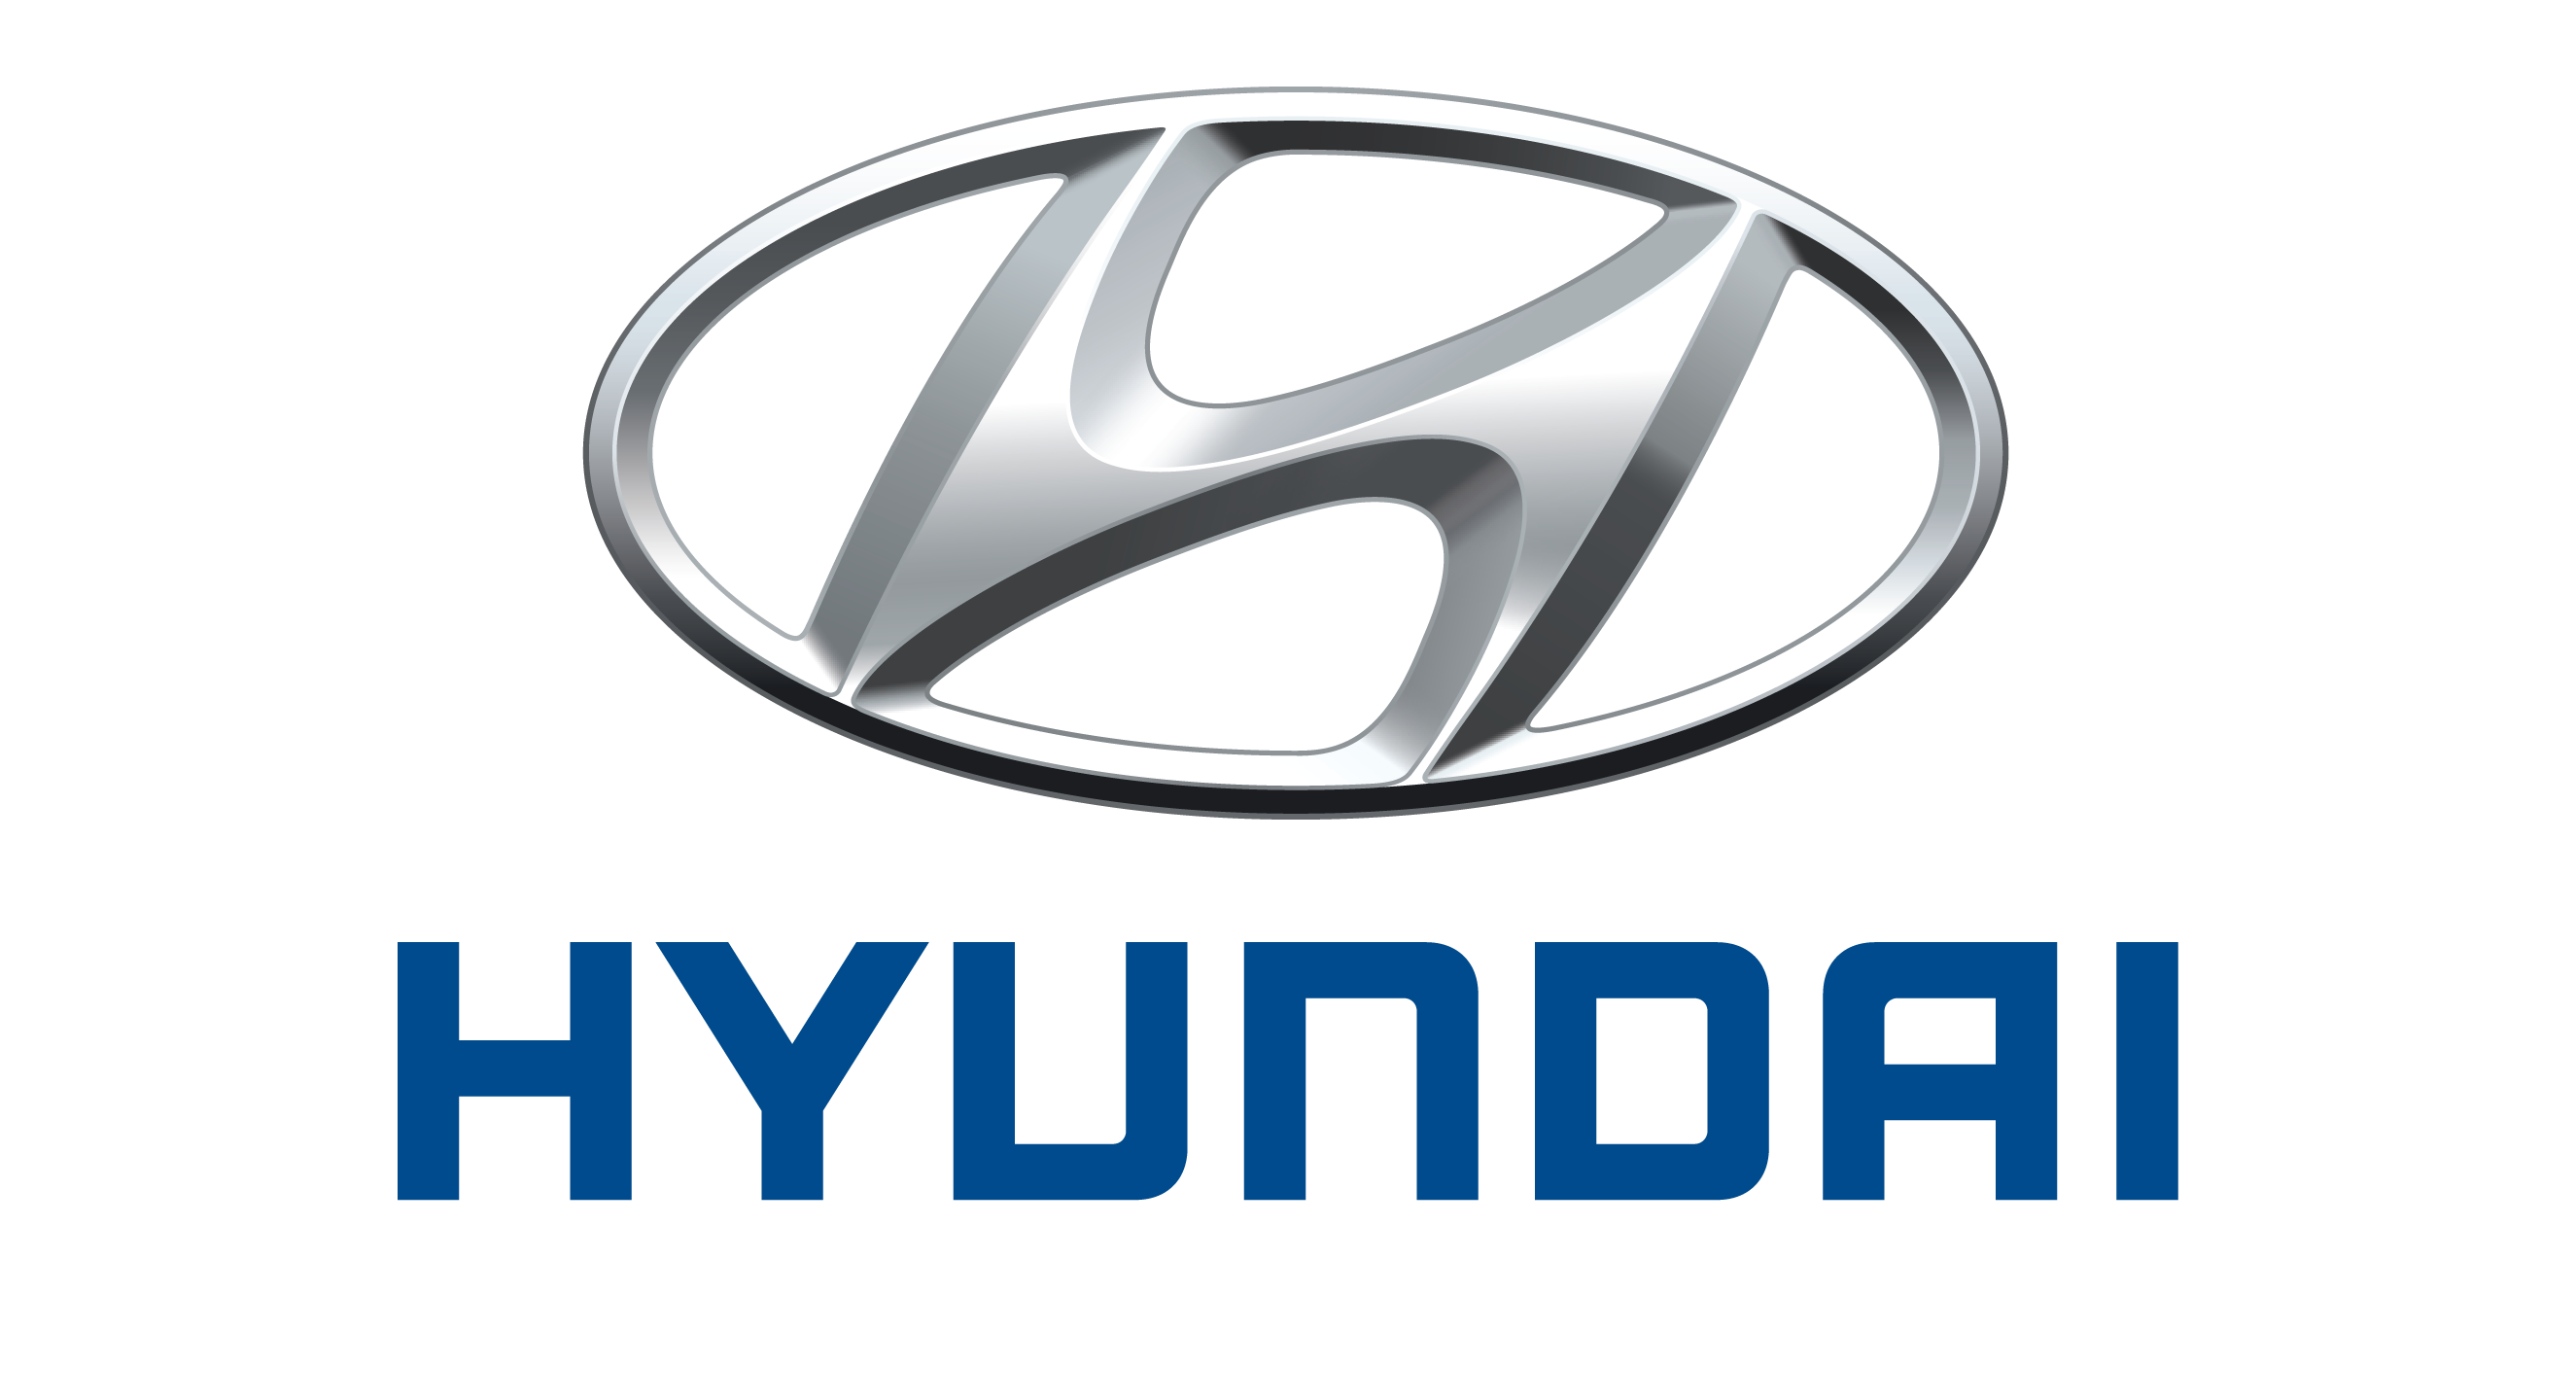 Hyundai/Kia